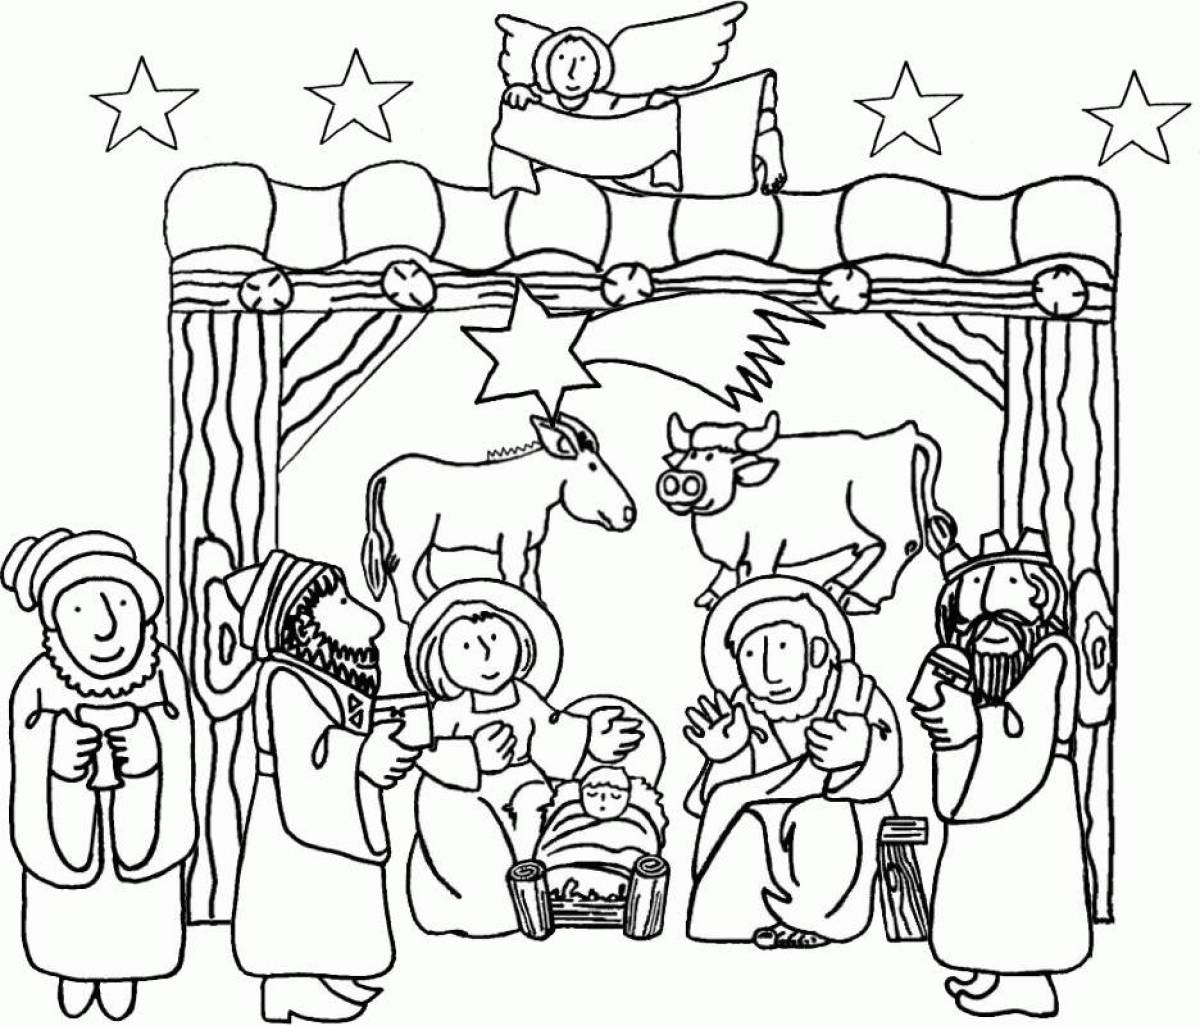 Nativity scene bright coloring